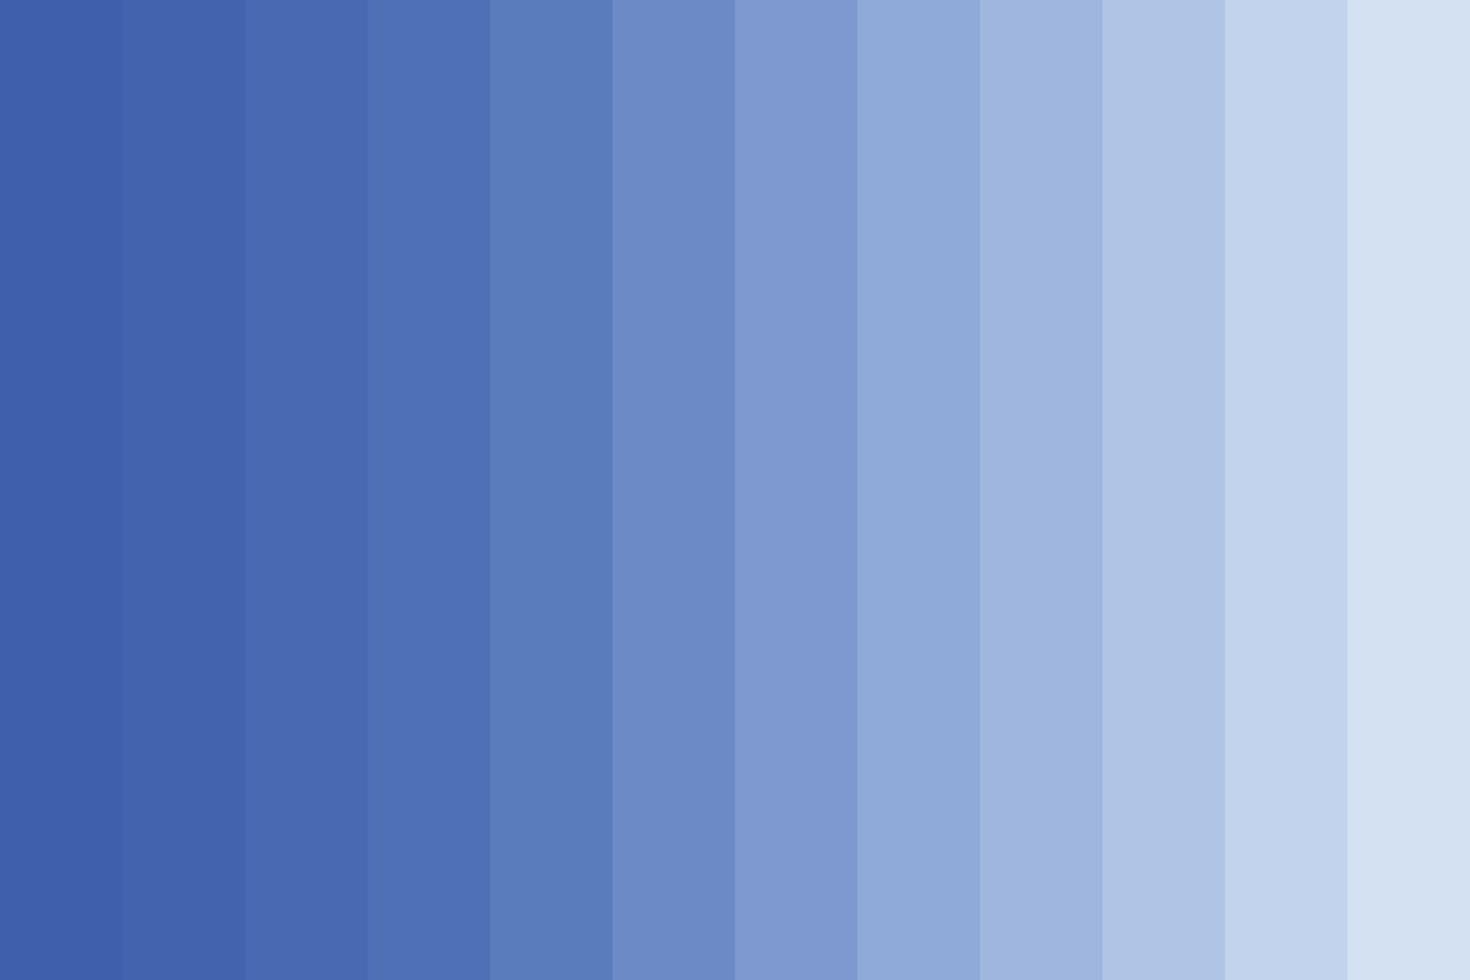 cor azul gradação de fundo vector plana. modelo gráfico gradiente de pigmento de tonalidade azul.